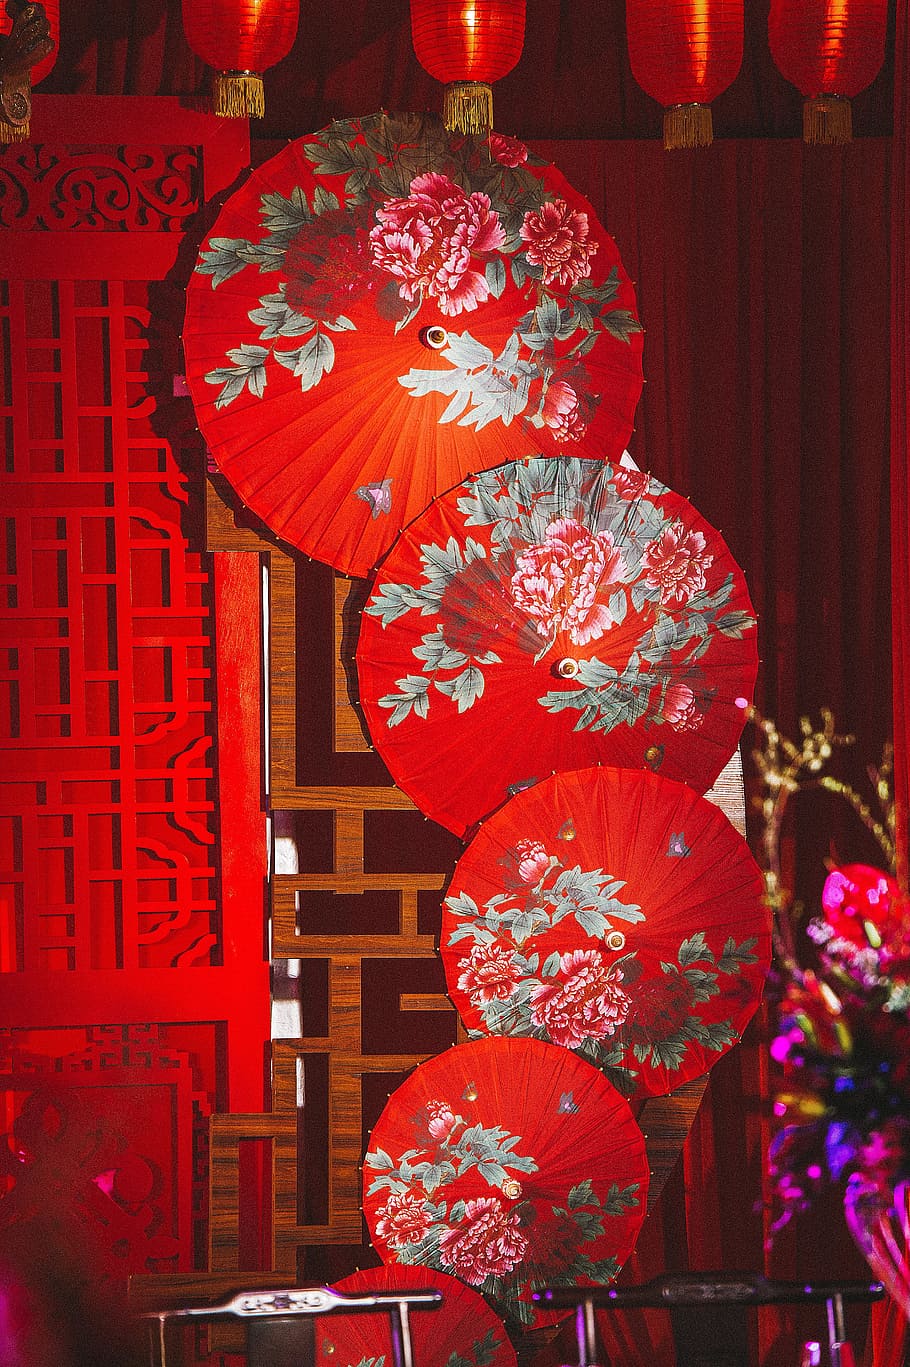 boda china, boda, estilo chino, rojo, decoración, colgante, ninguna gente, linterna, equipo de iluminación, fiesta